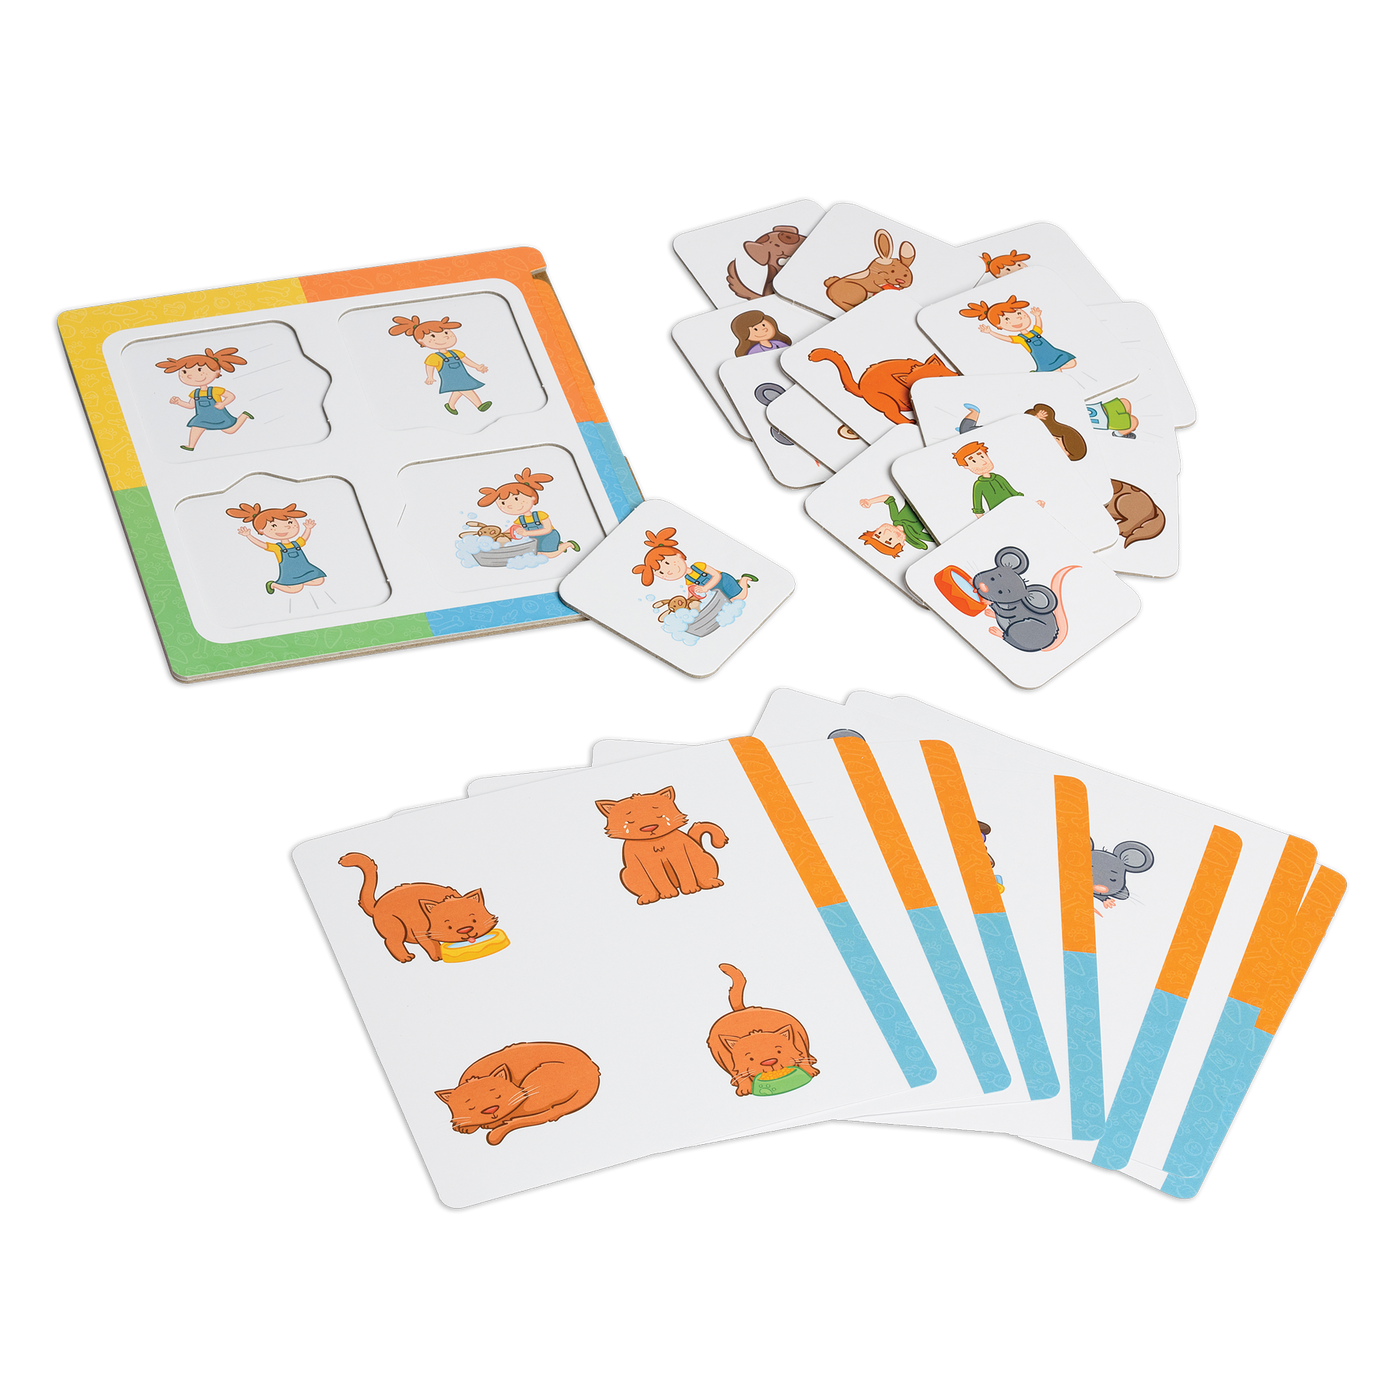 Loto des petites phrases - Composantes du jeu : gabarit, planches de jeu et cartes-images illustrant animaux et humains